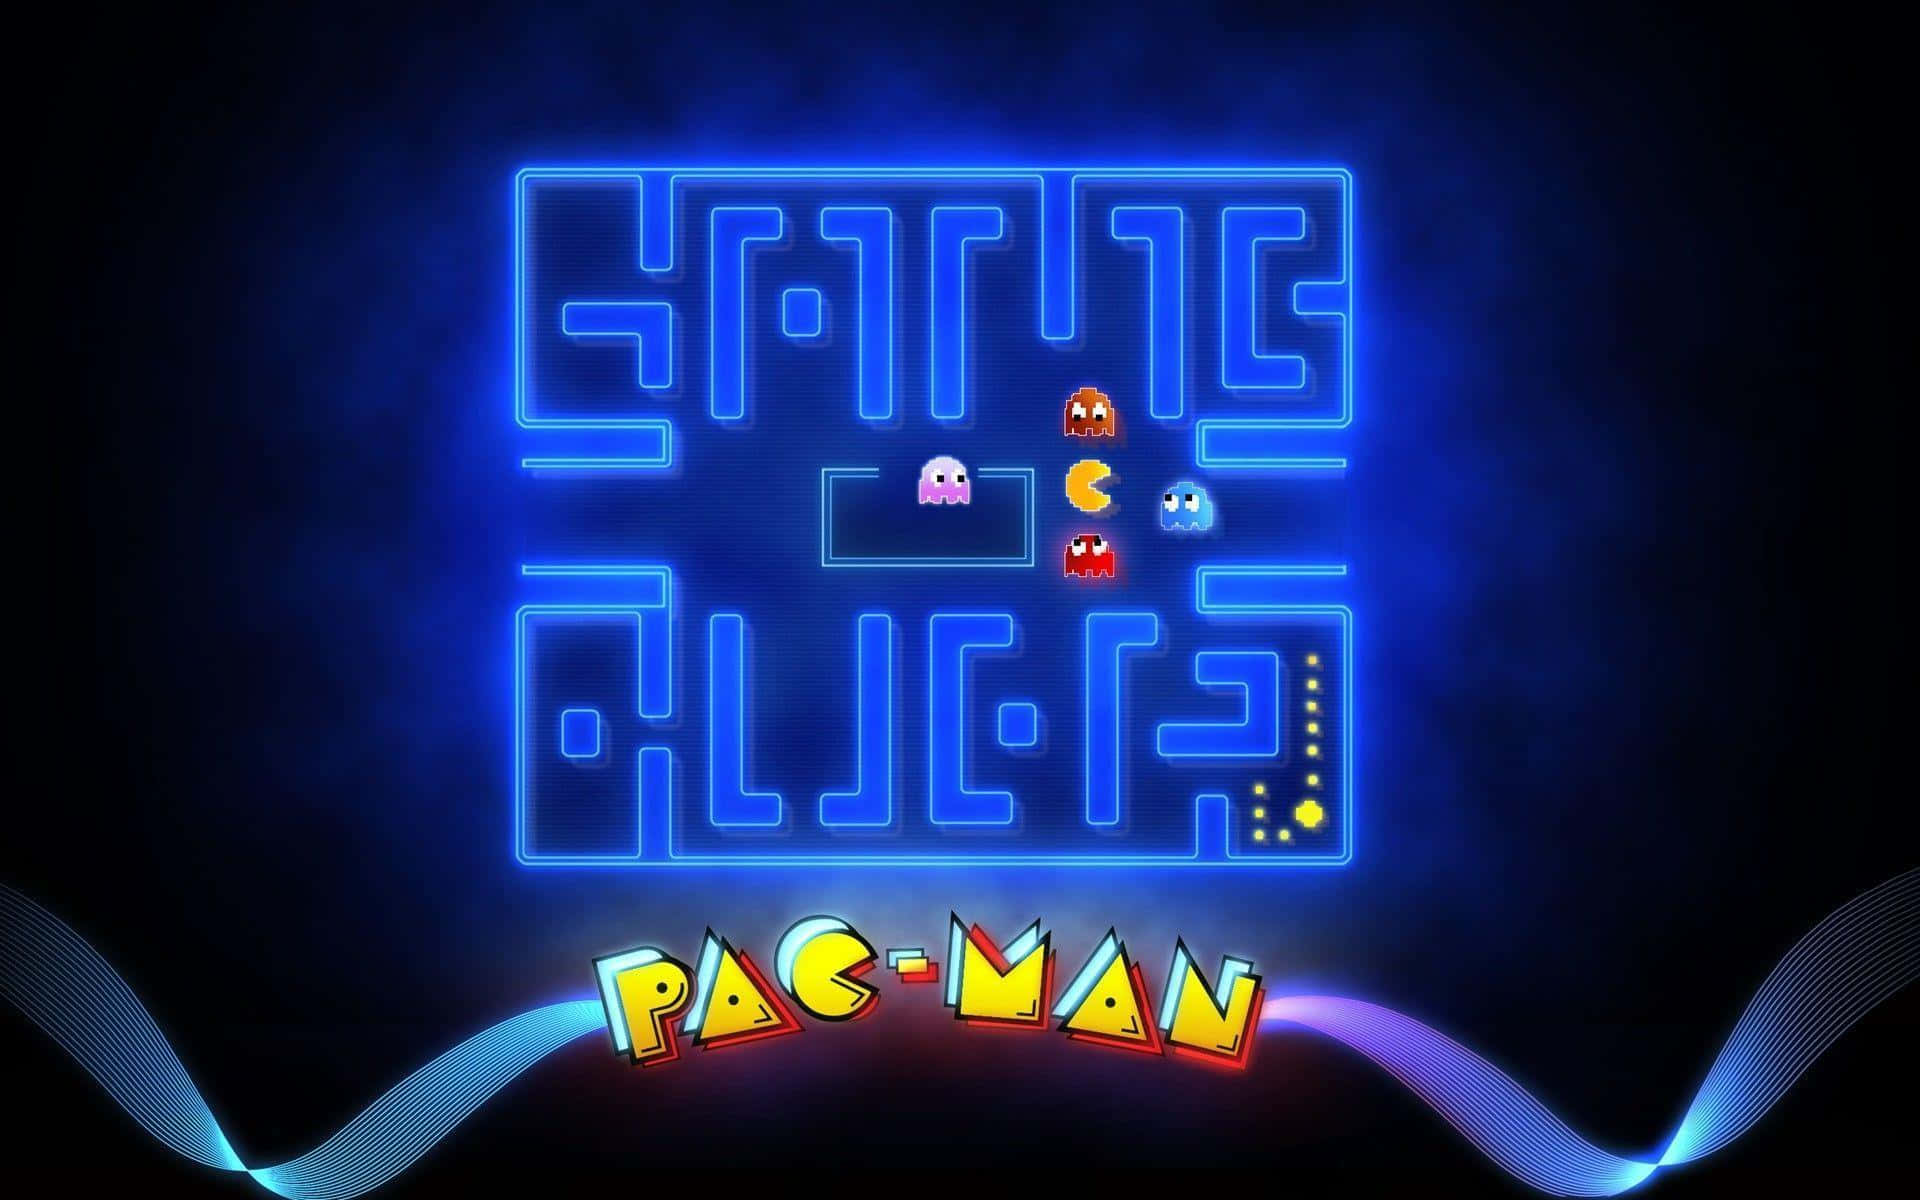 Pacmanvon Geistern Im Labyrinth Eingeschlossen Wallpaper